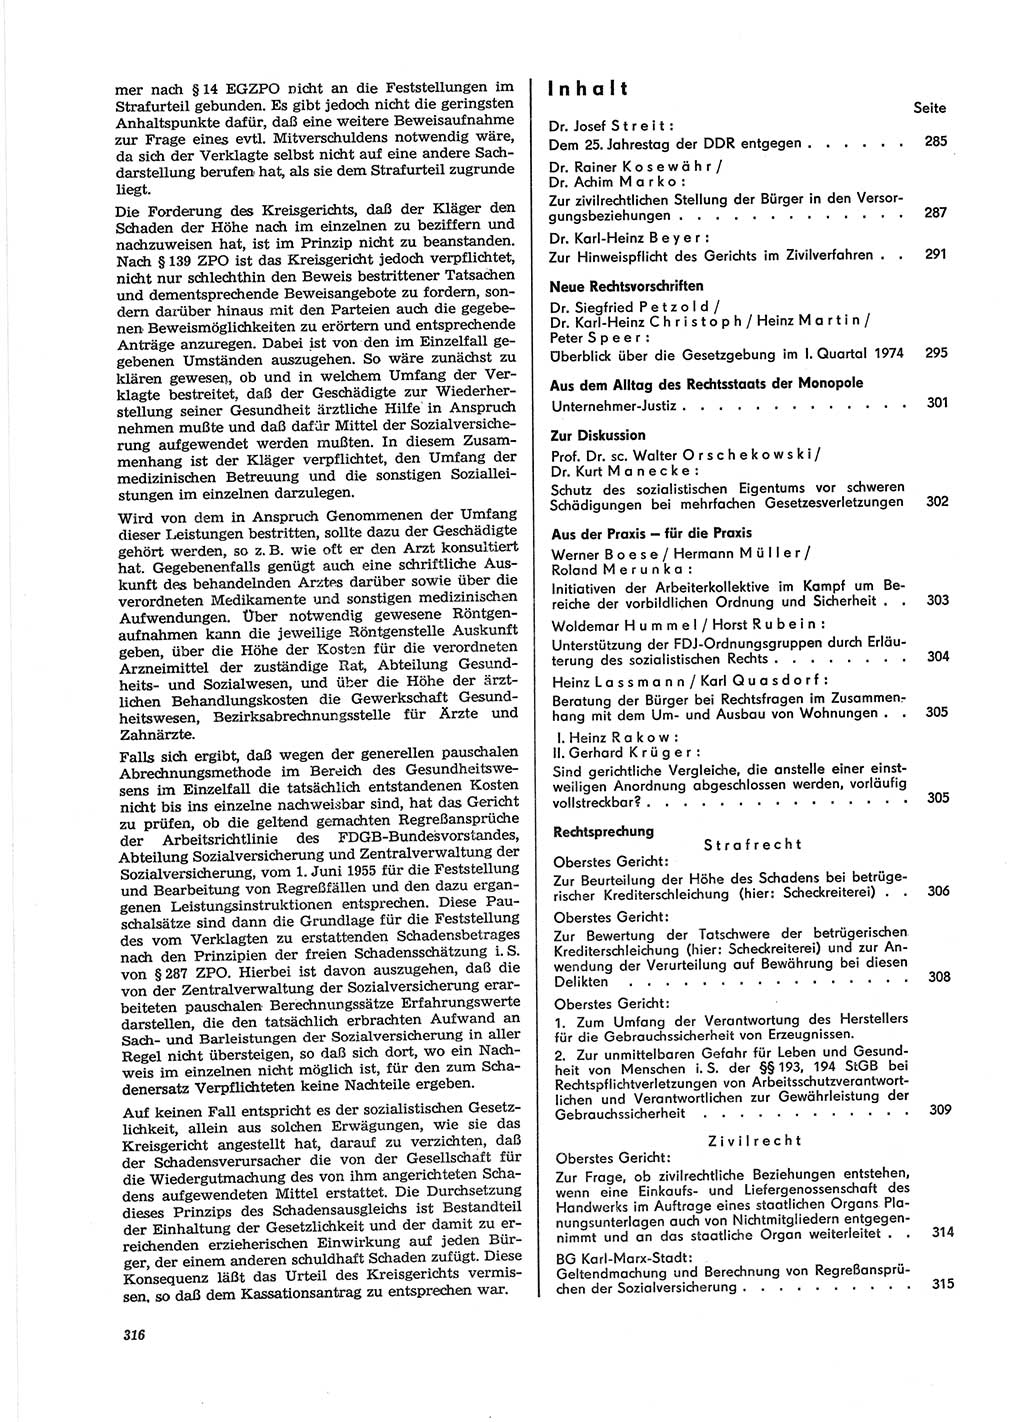 Neue Justiz (NJ), Zeitschrift für Recht und Rechtswissenschaft [Deutsche Demokratische Republik (DDR)], 28. Jahrgang 1974, Seite 316 (NJ DDR 1974, S. 316)